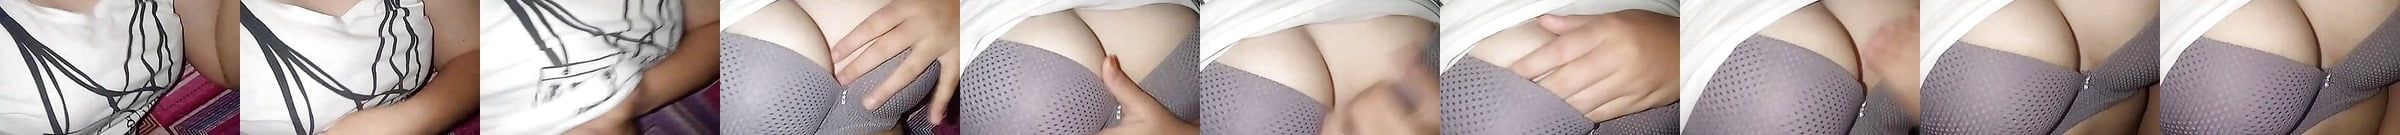 Порно видео со скрытой камеры Смотреть онлайн 183 порно